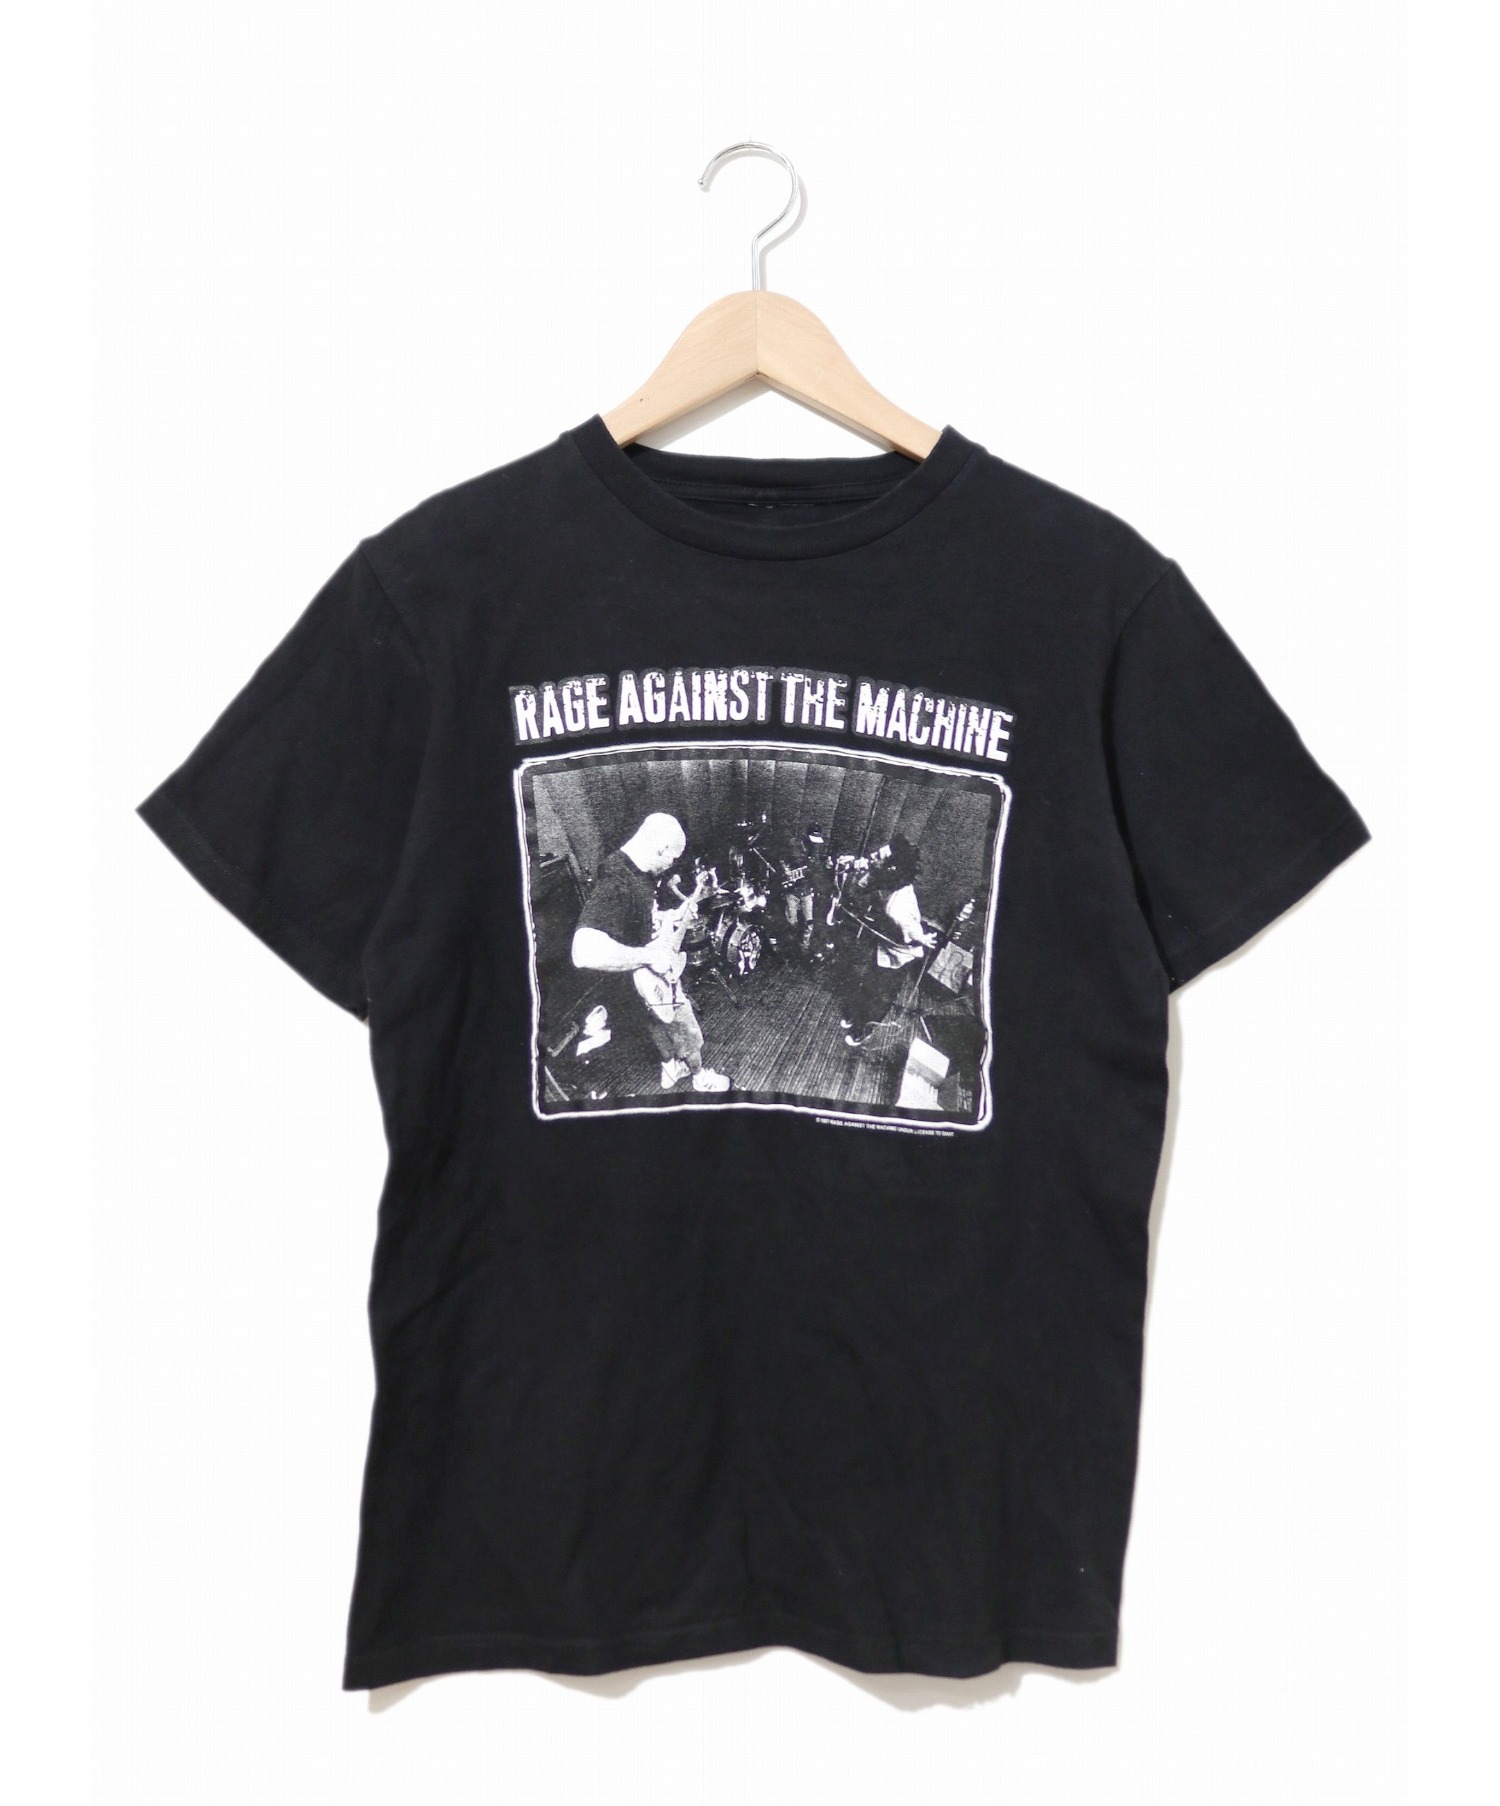 バンドTシャツ (バンドTシャツ) [古着]RAGE AGAINST THE MACHINE ブラック サイズ:タグ切れの為不明  97年コピーライト・ボディ不明・レアブラック